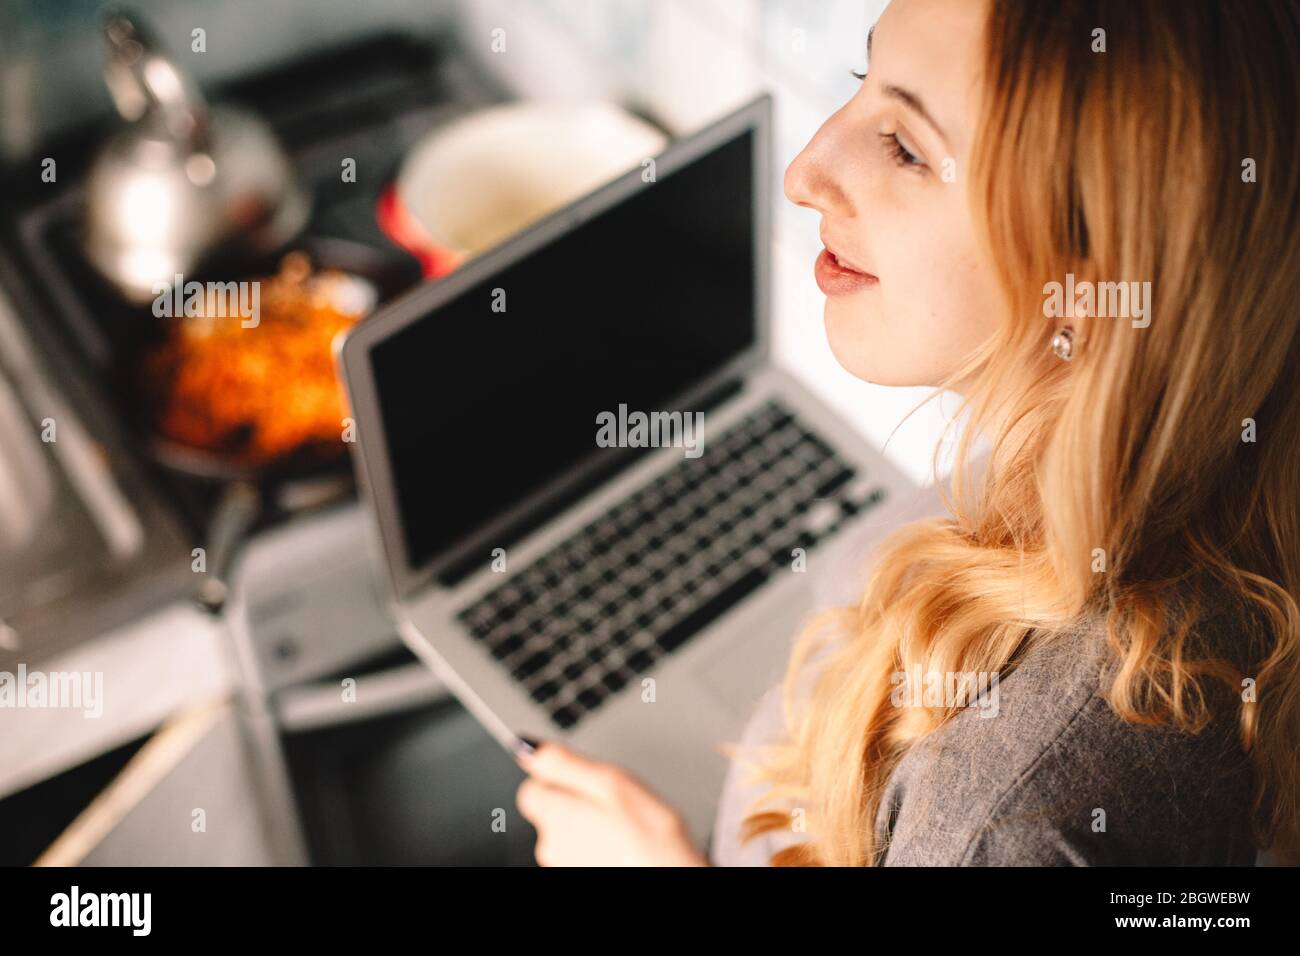 Jeune femme réfléchie tenant un ordinateur portable tout en cuisinant des aliments dans la cuisine Banque D'Images